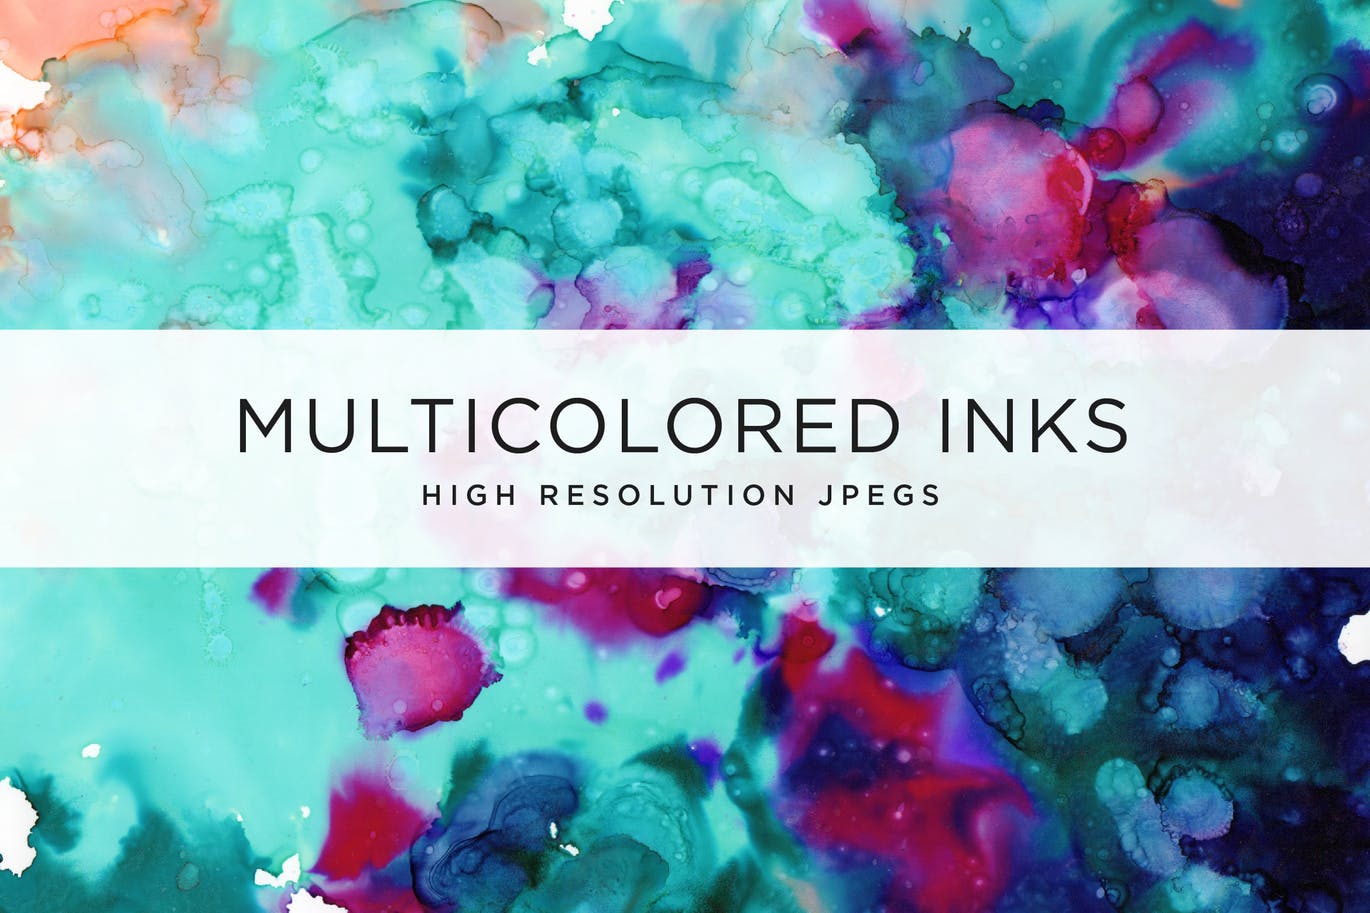 超大尺寸彩色墨水肌理纹理背景素材v1 Multicolored Inks – Volume 1插图